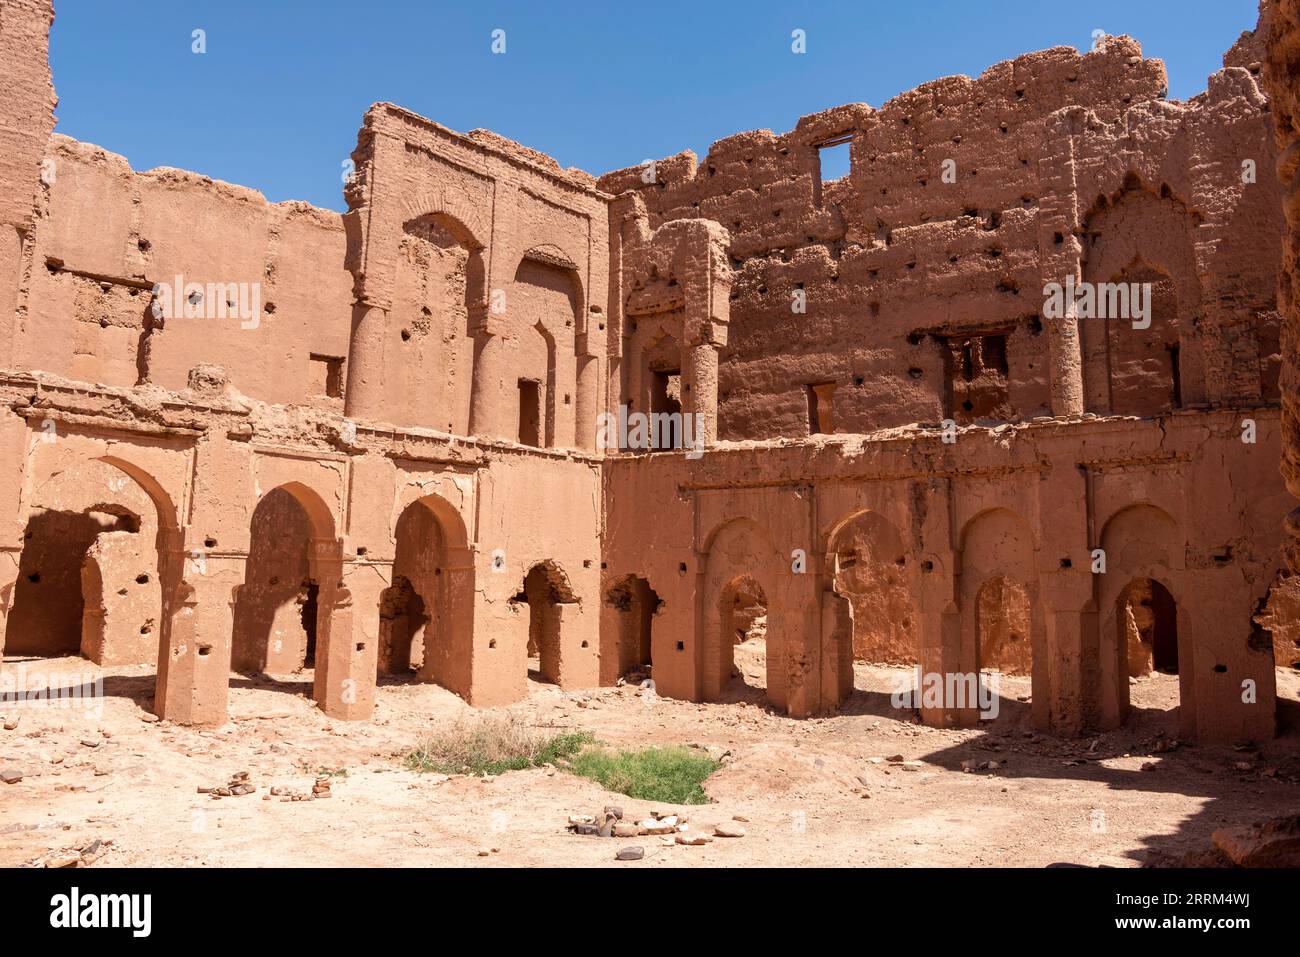 Wunderschöne mittelalterliche Burg in Tamenougalt im Draa-Tal in Marokko Stockfoto